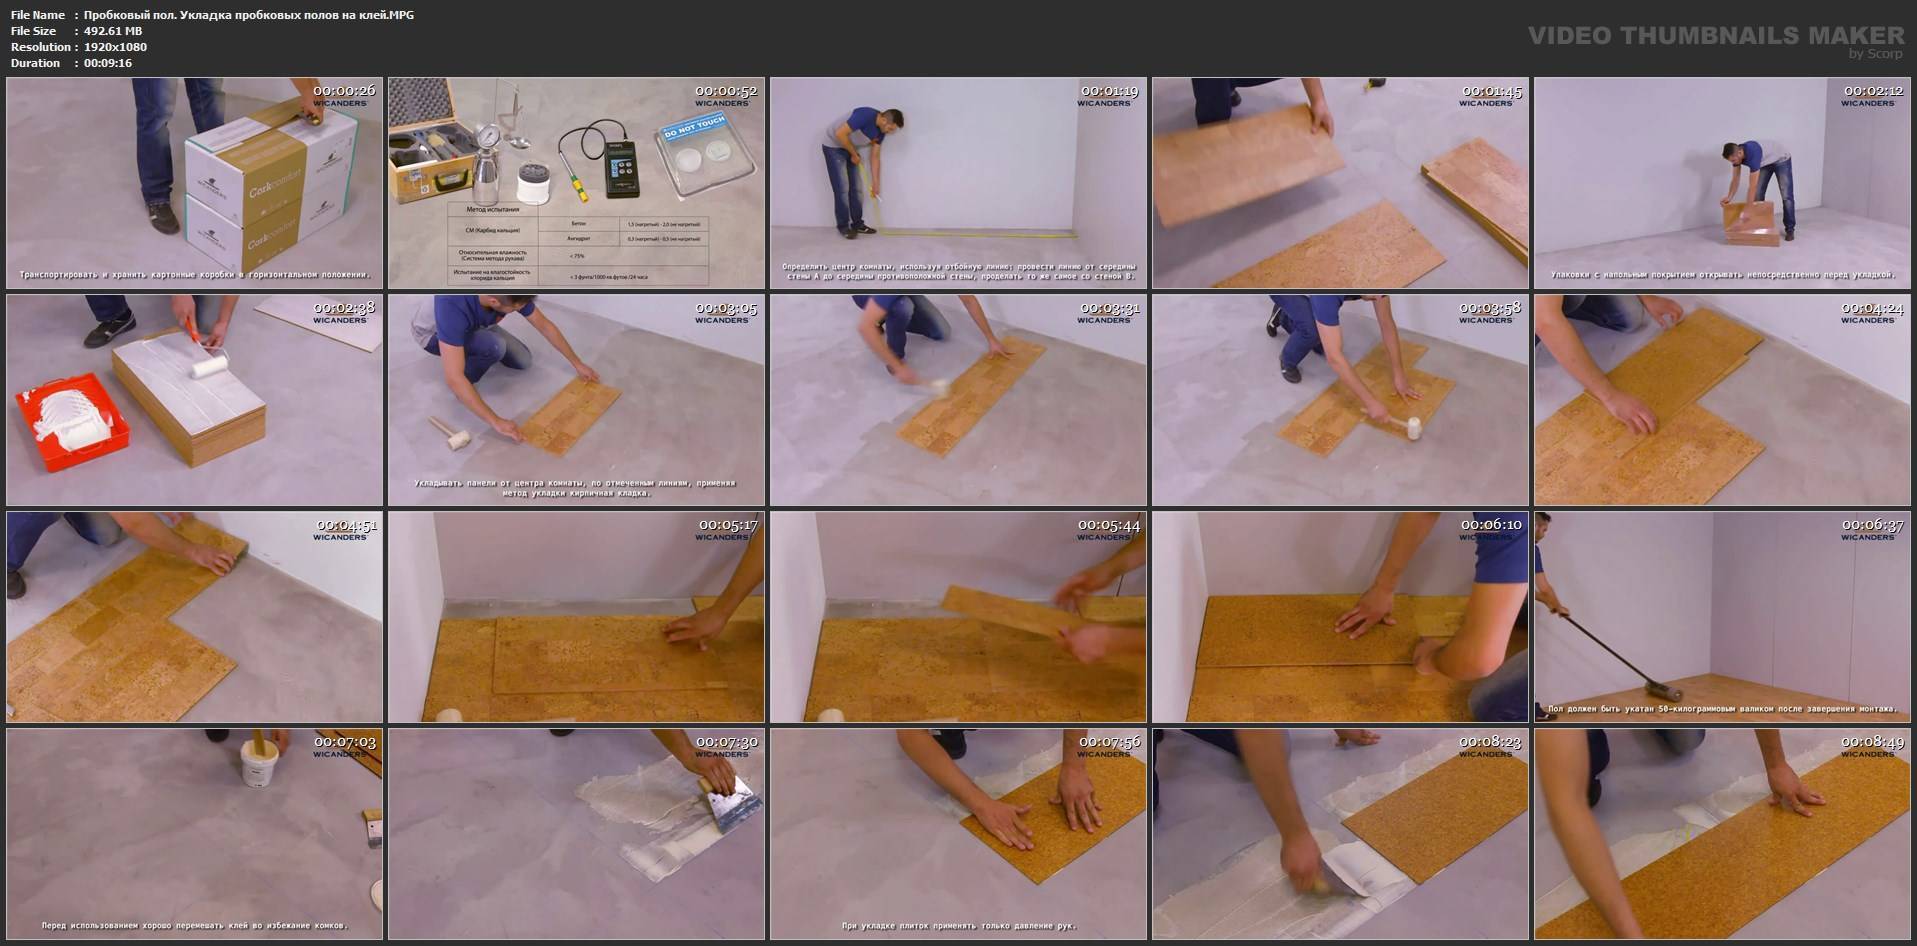 Покраска деревянного пола своими руками: выбираем материалы и правильно подготавливаем поверхность